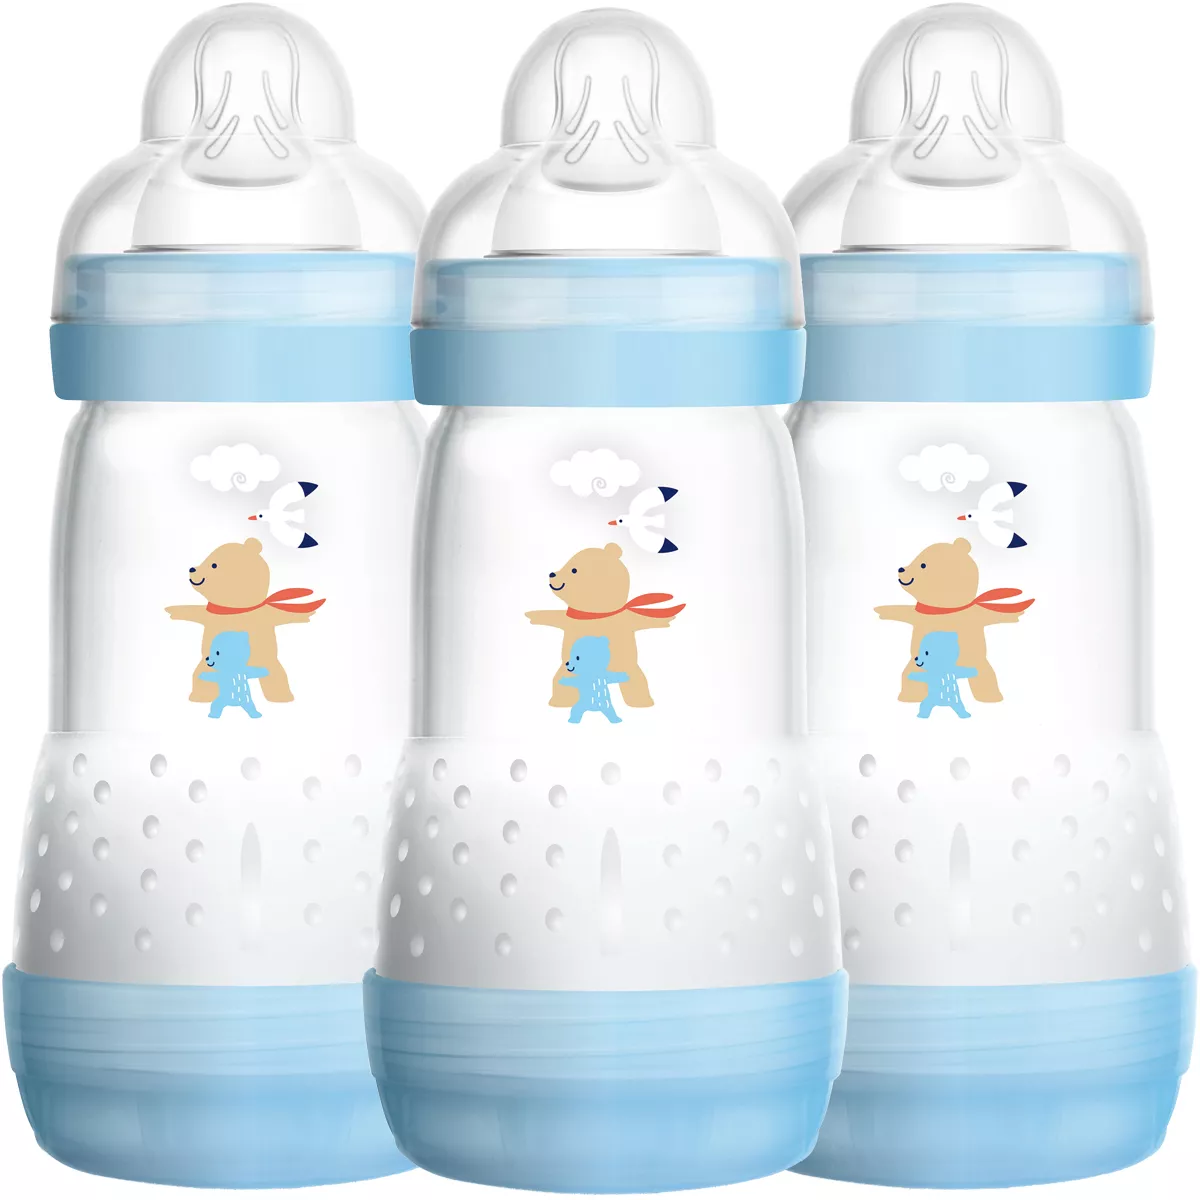 MAM Easy Start Anti-Colic Self-Sterilising Bottle - Newborn - 3 Pack  - 260ml